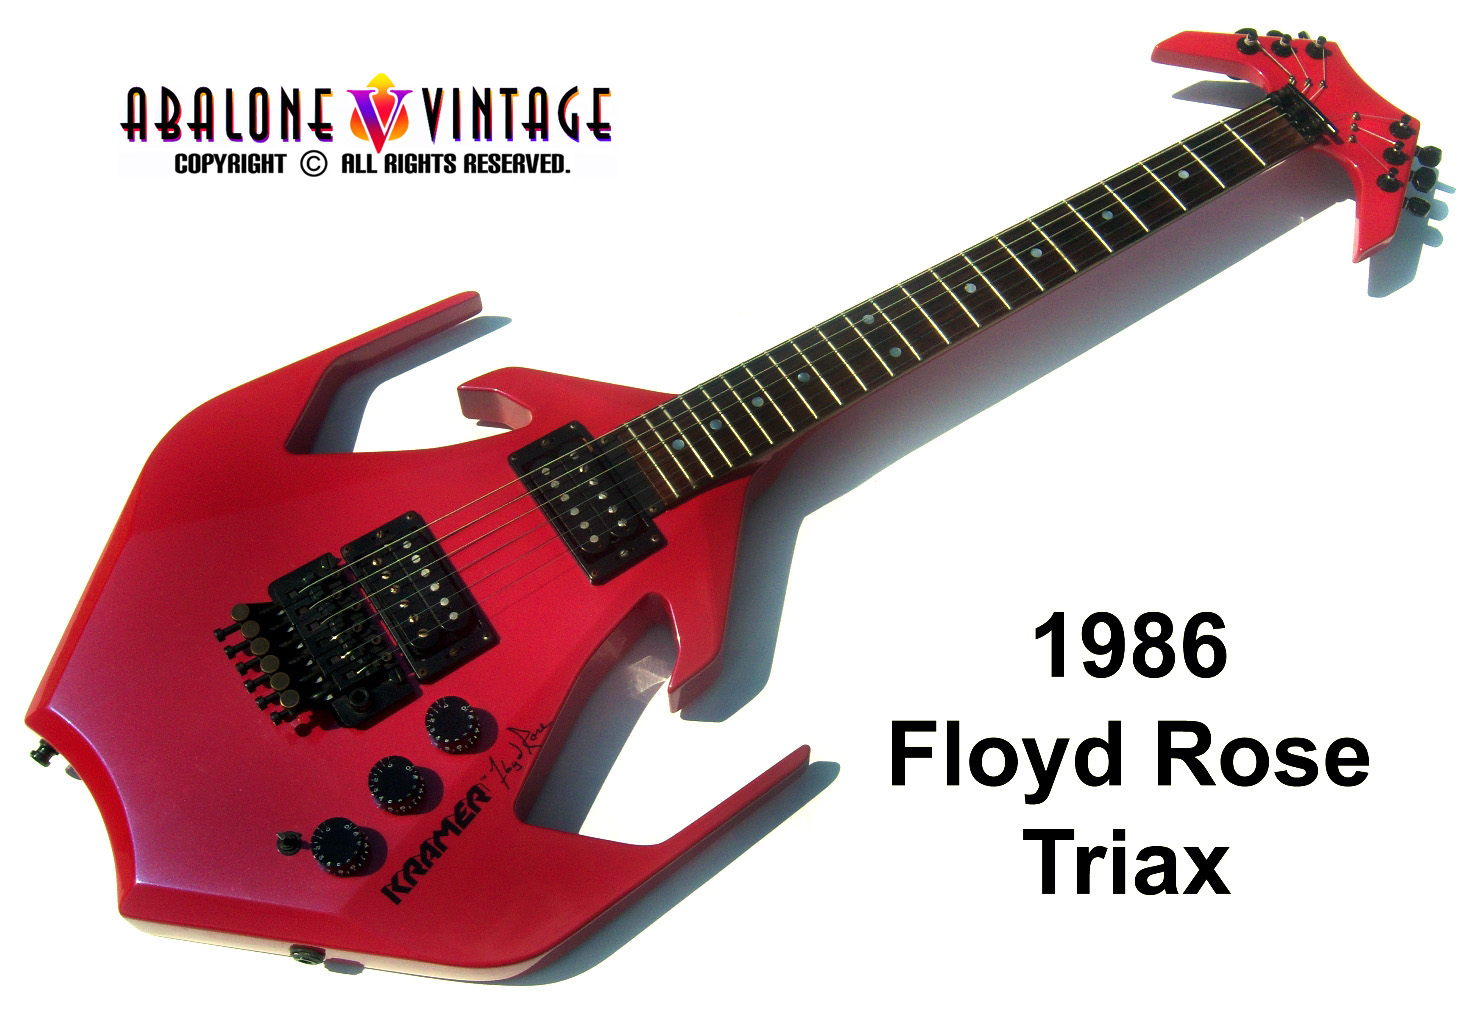 Kramer Floyd Rose Triax guitar 1986